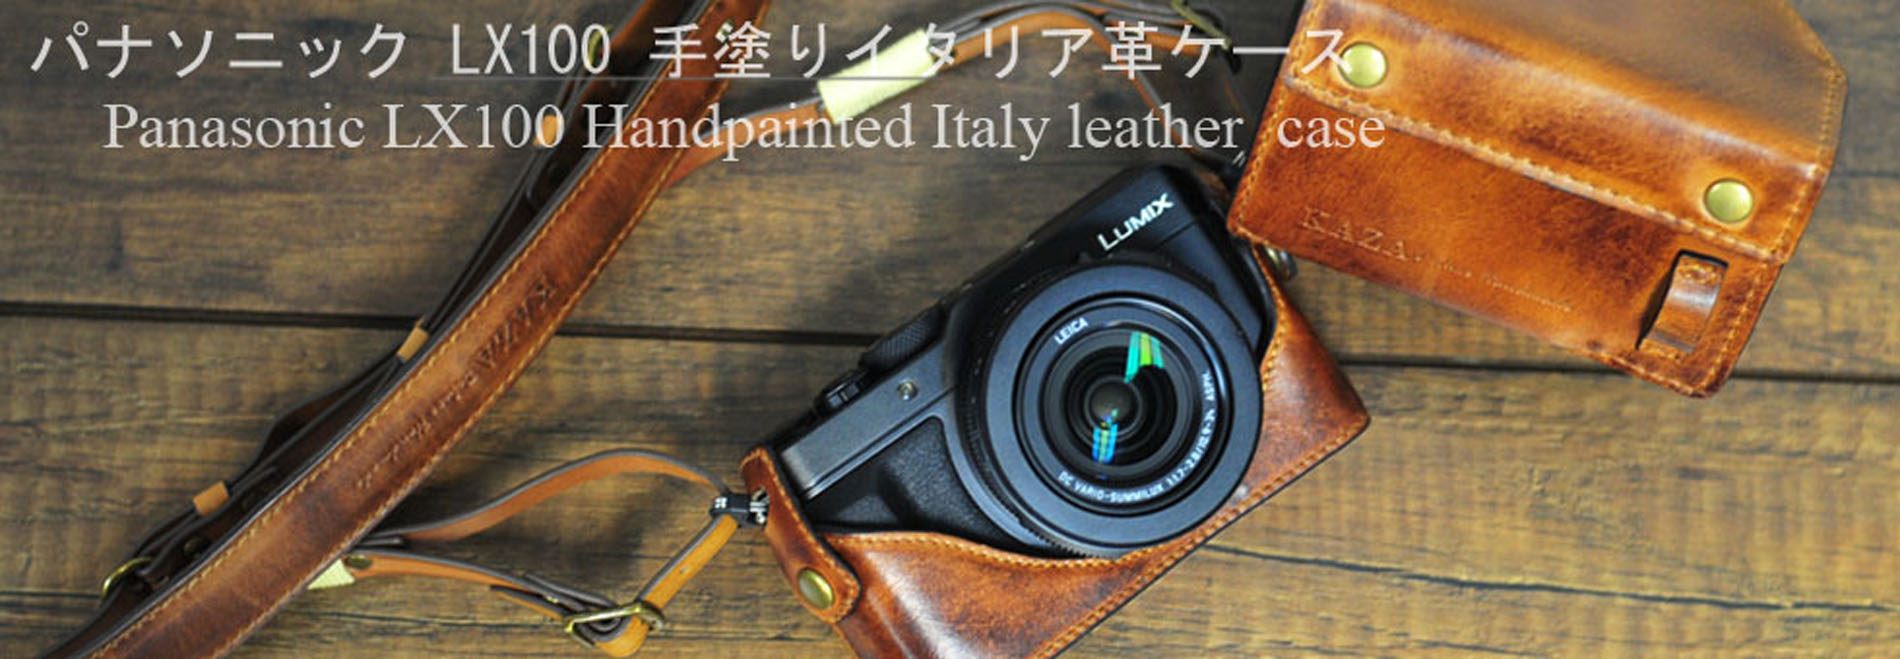 Panasonic lx100 相機皮套 Leather case パナソニック LX100 カメラケース by KAZA